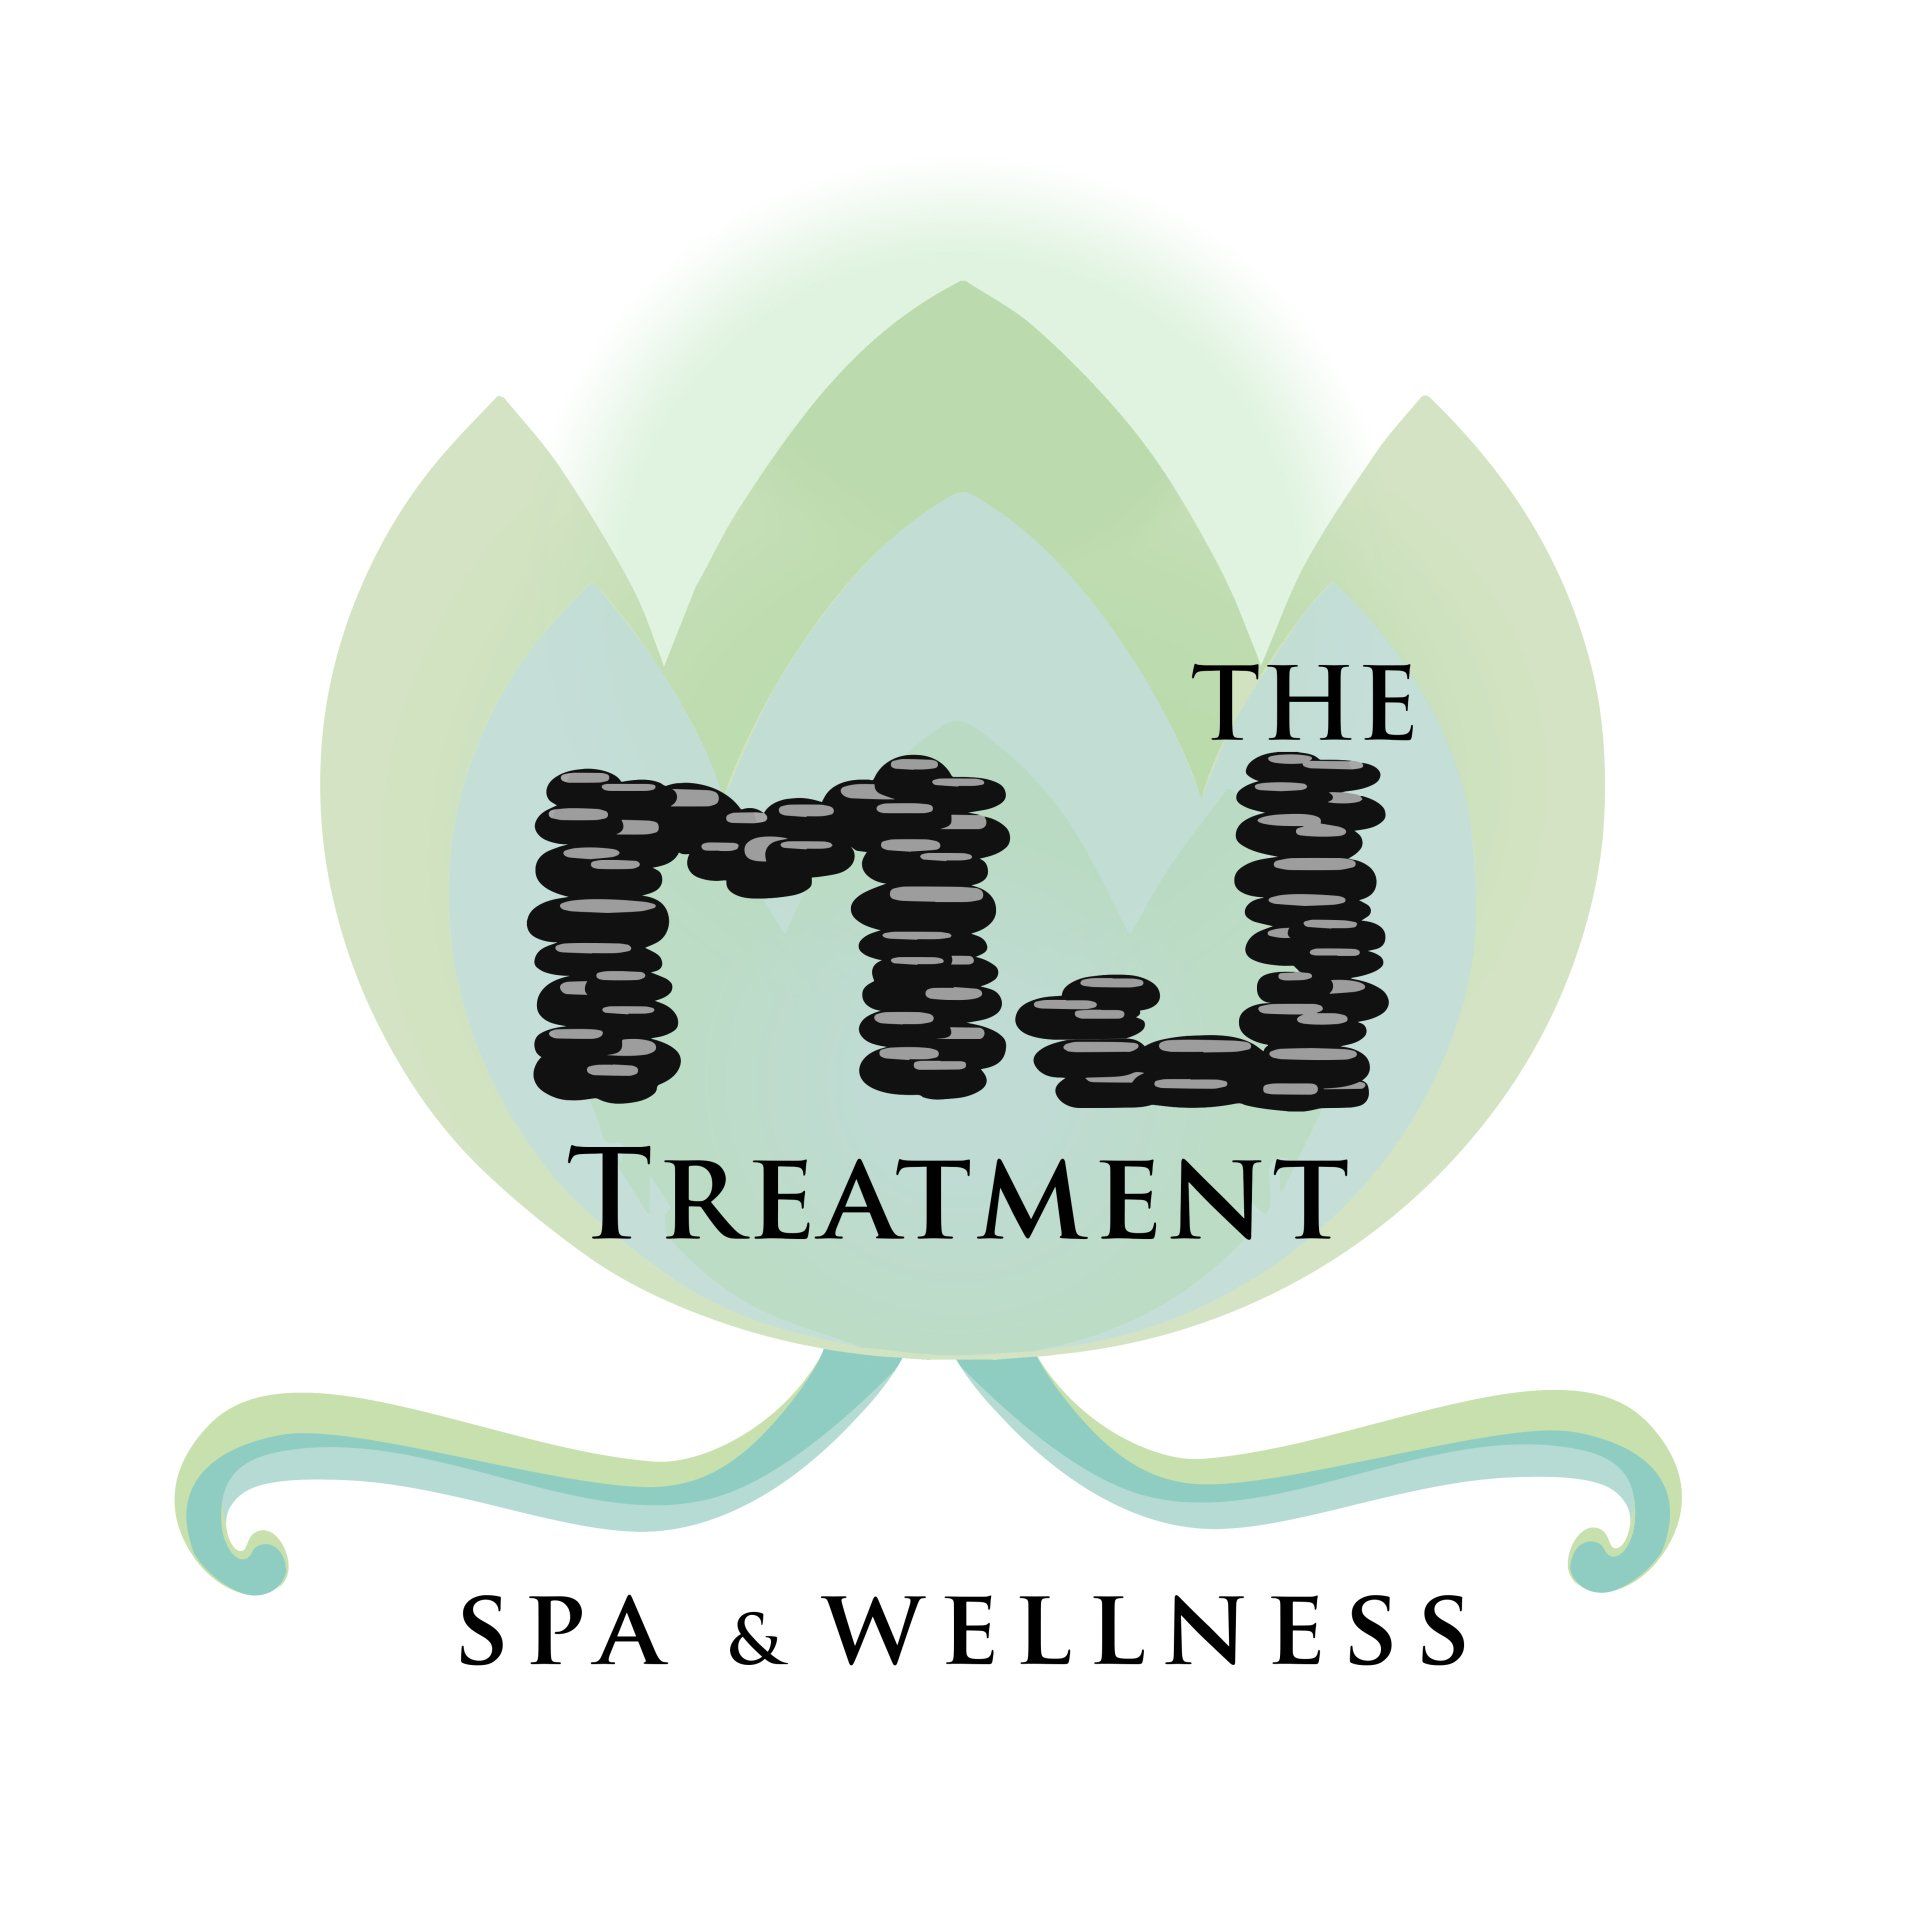 Back, Neck, Shoulder Massage - Green Leaf Treatments